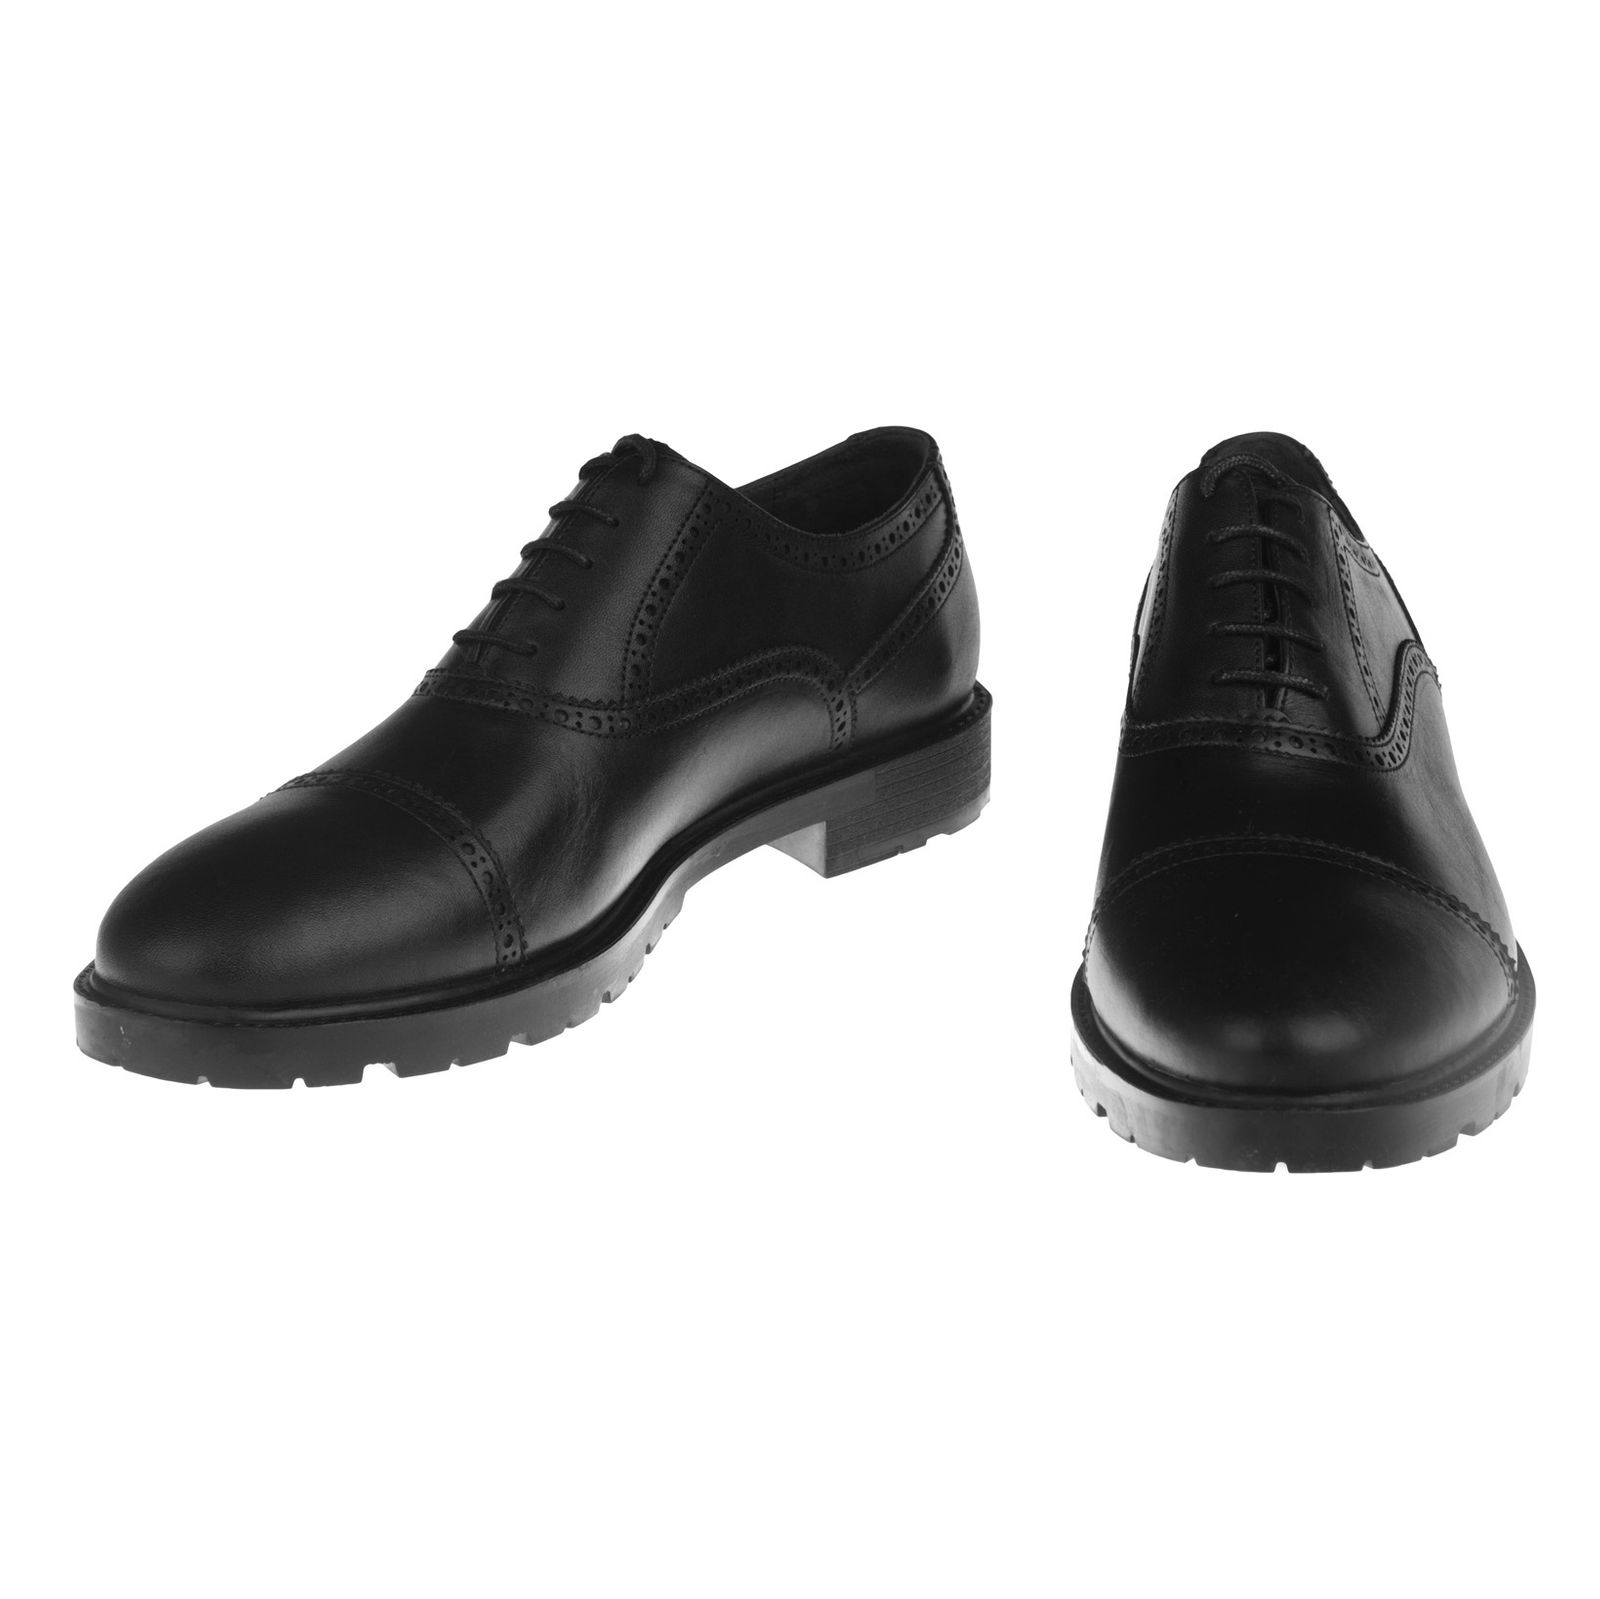 کفش مردانه بلوط مدل 7174B503-101 - مشکی - 5